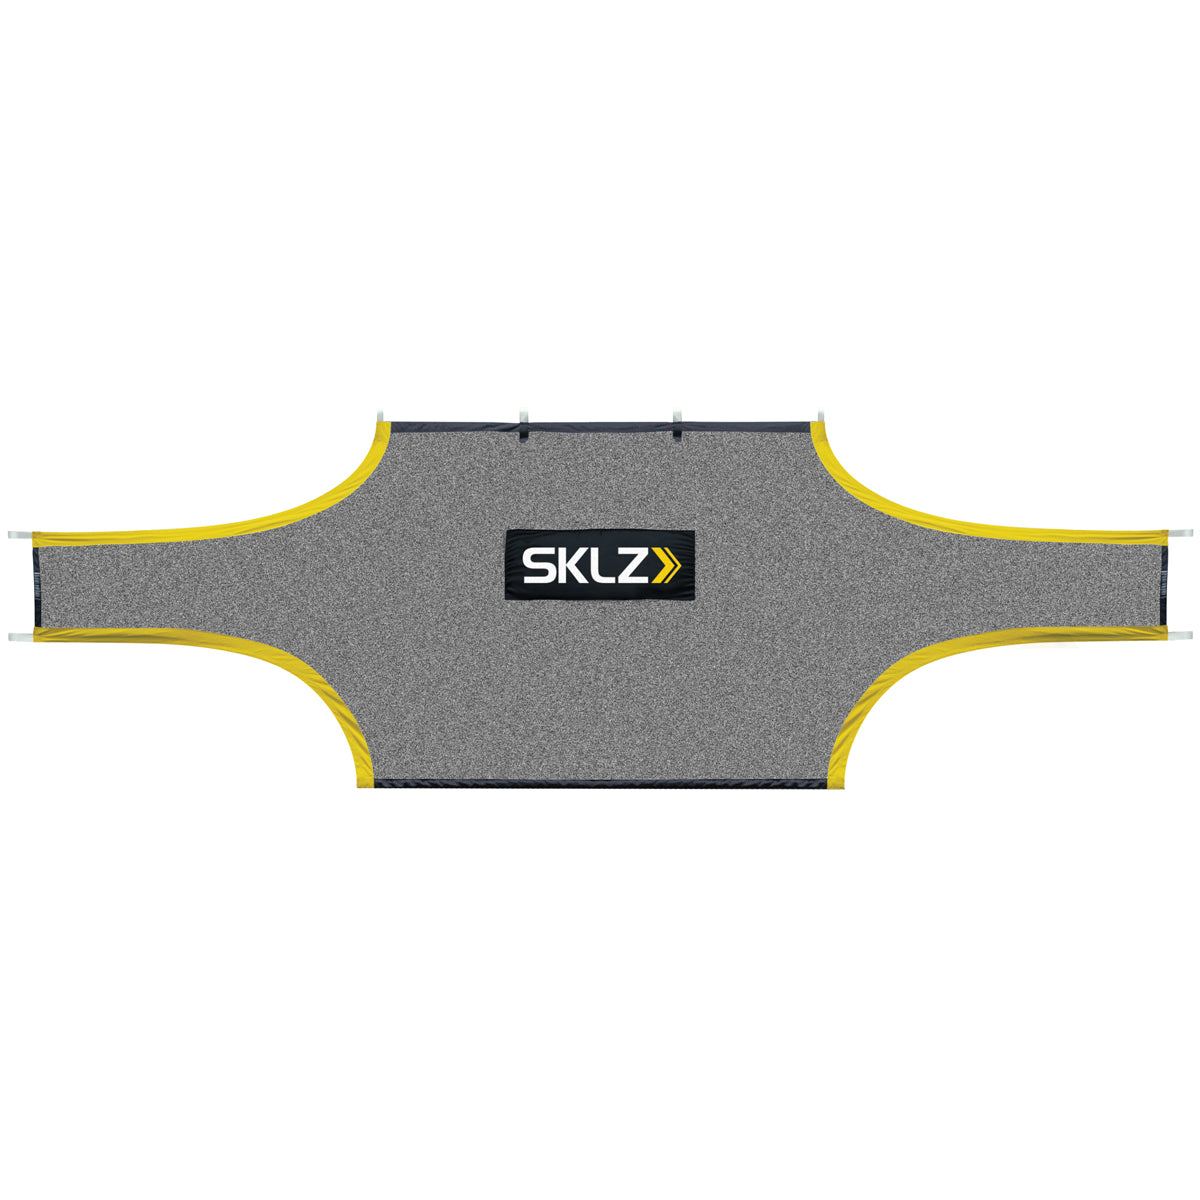 SKLZ Soccer Training Goal Shot - Black/Yellow SKLZ